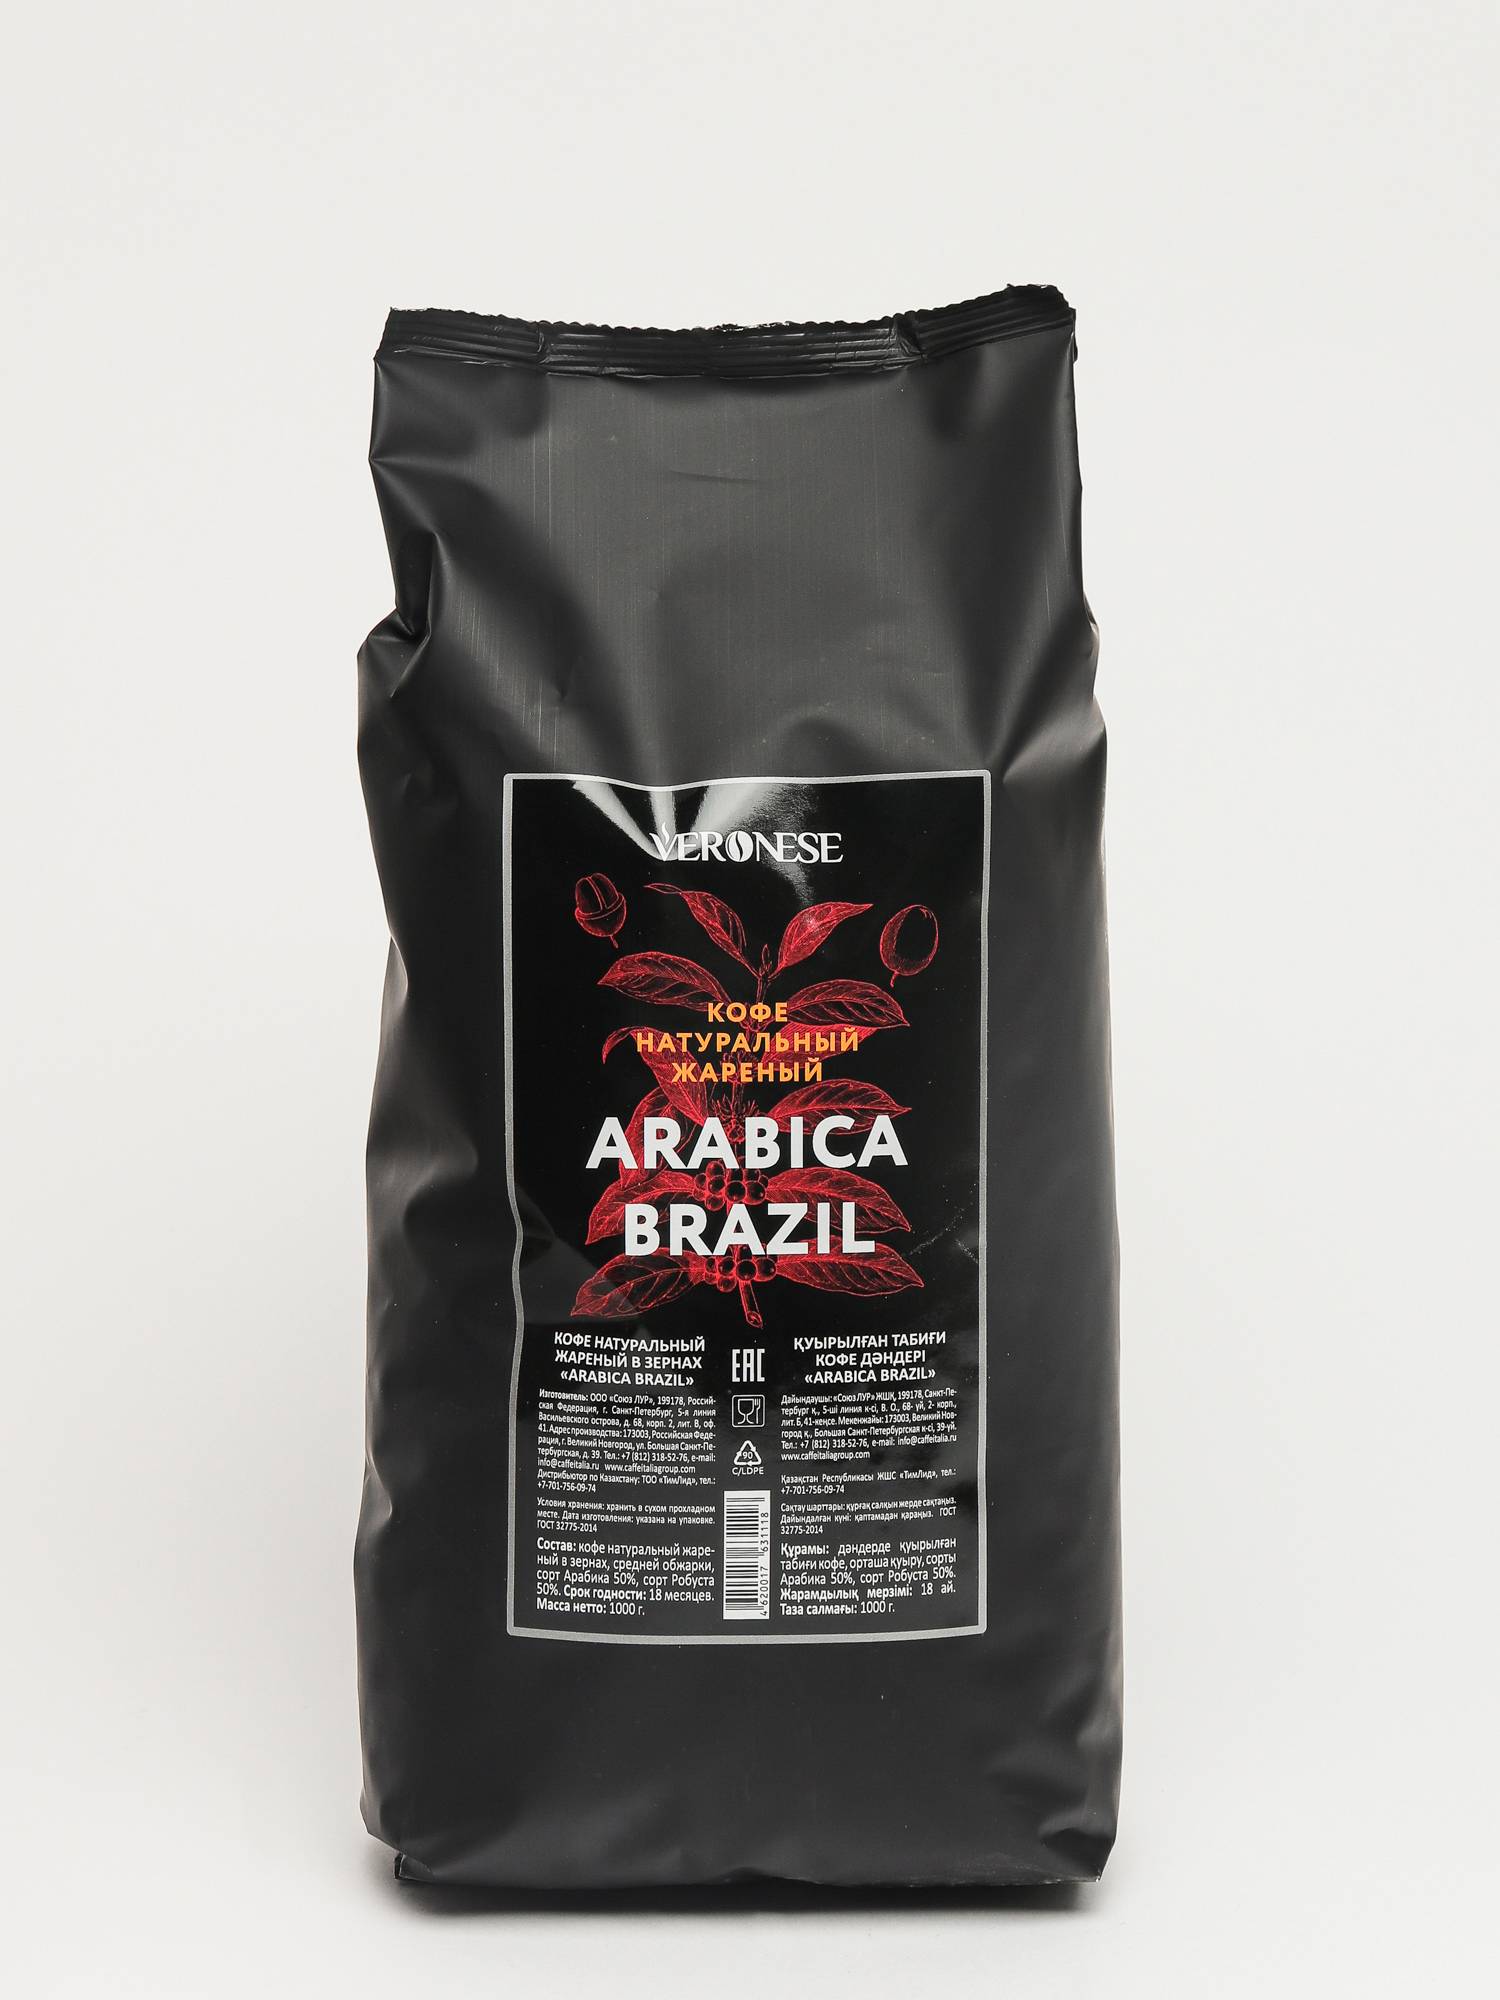 Кофе arabica зернах отзывы. Кофе в зернах Veronese Arabica. Кофе в зернах Veronese Brazil. Молотый кофе Арабика Робуста. Кофе молотый Veronese Arabica.